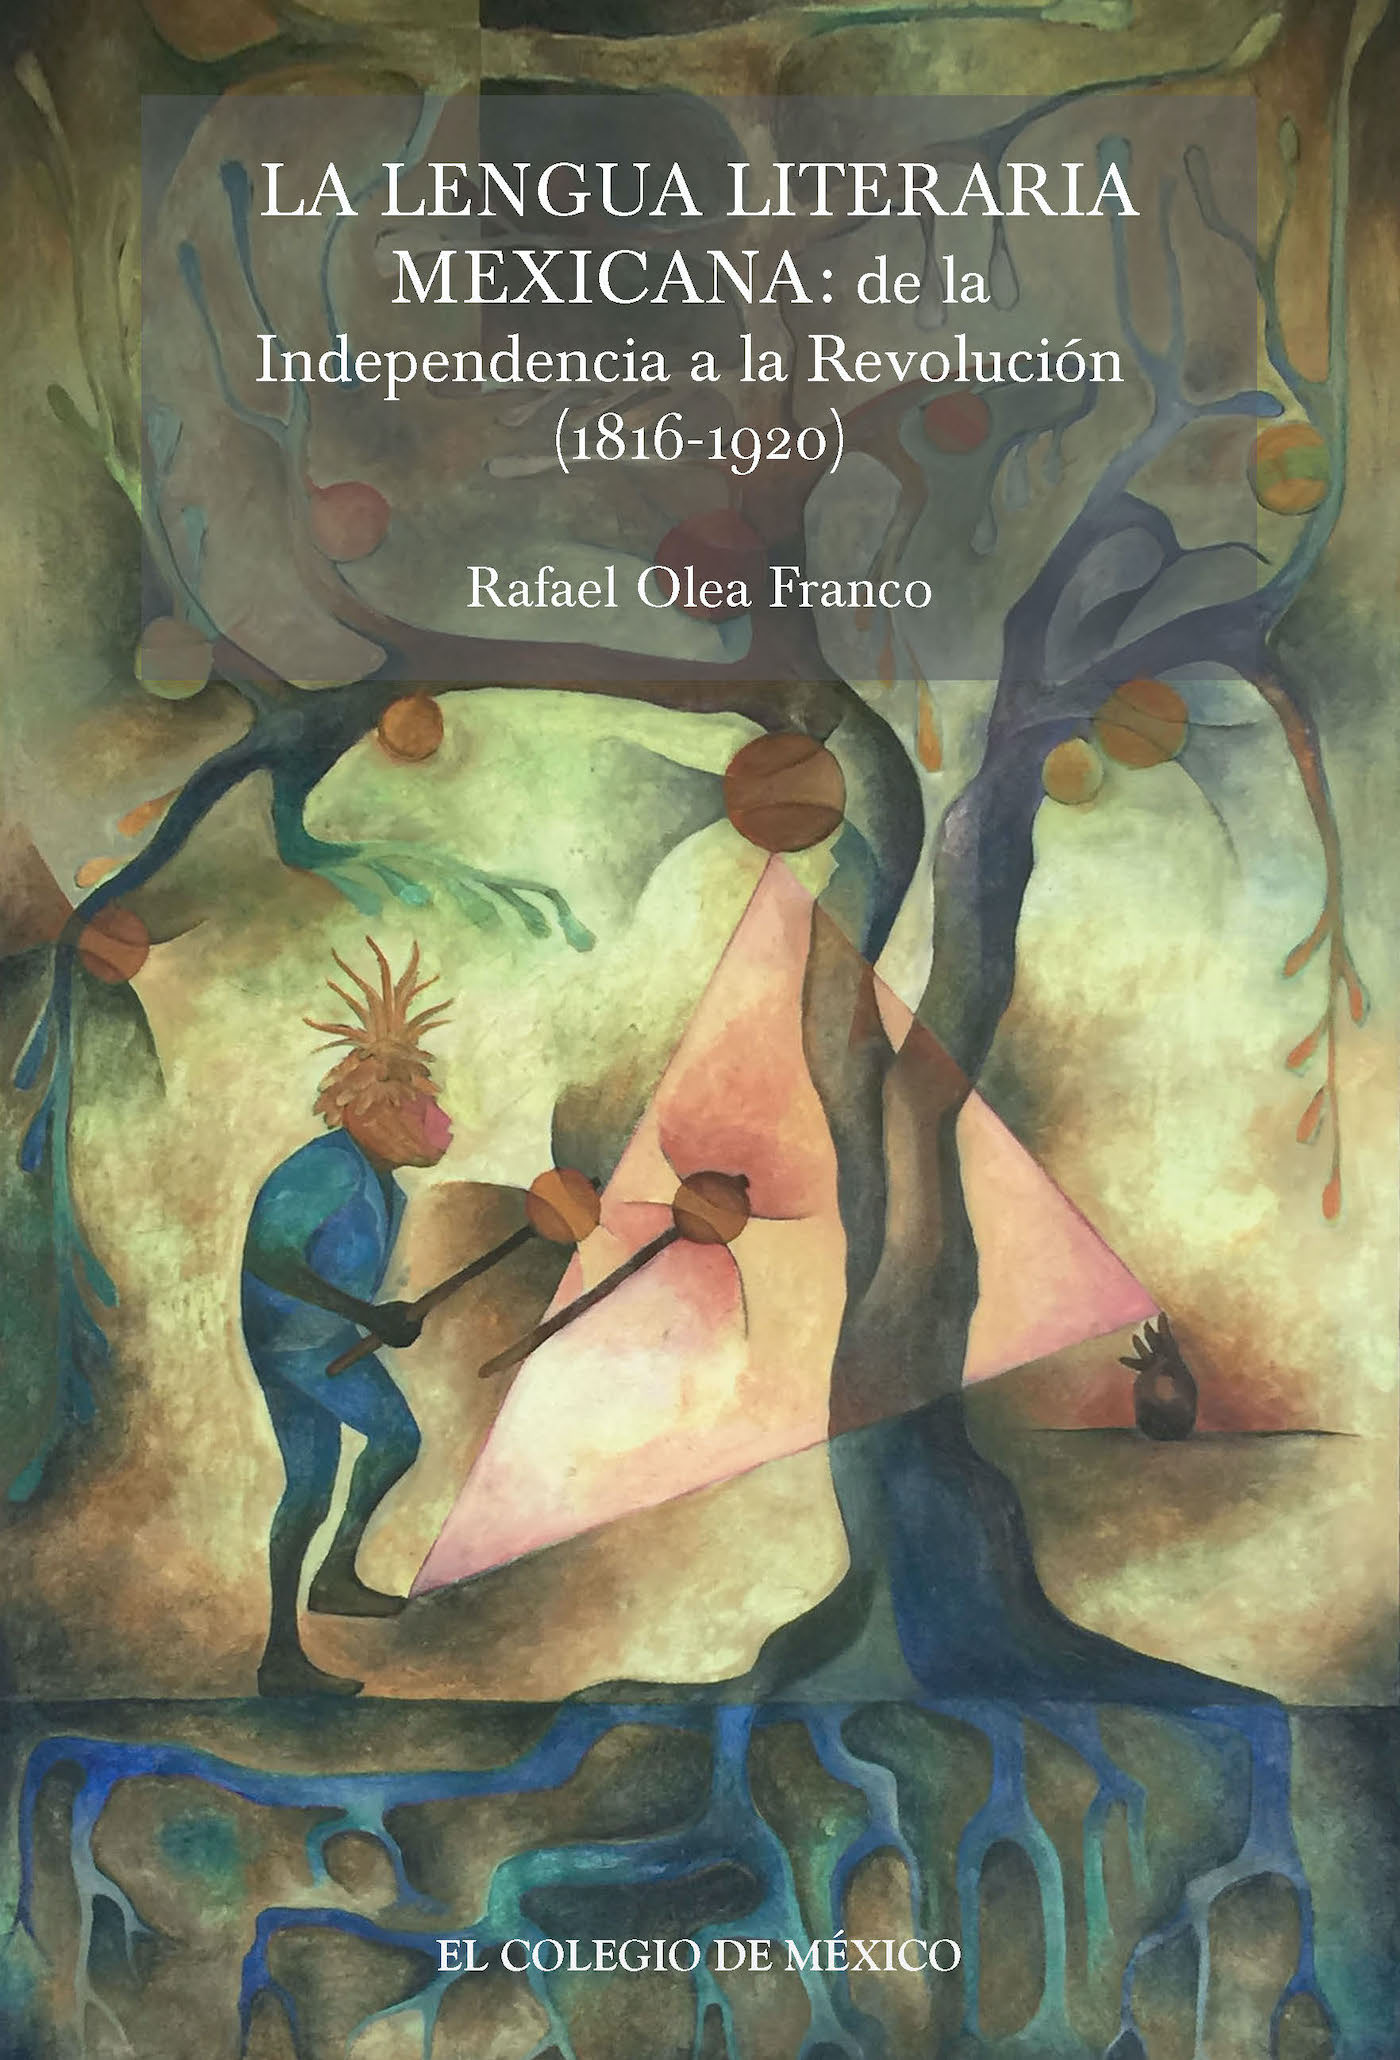 La lengua literaria mexicana de la Independencia a la Revolución - photo 1